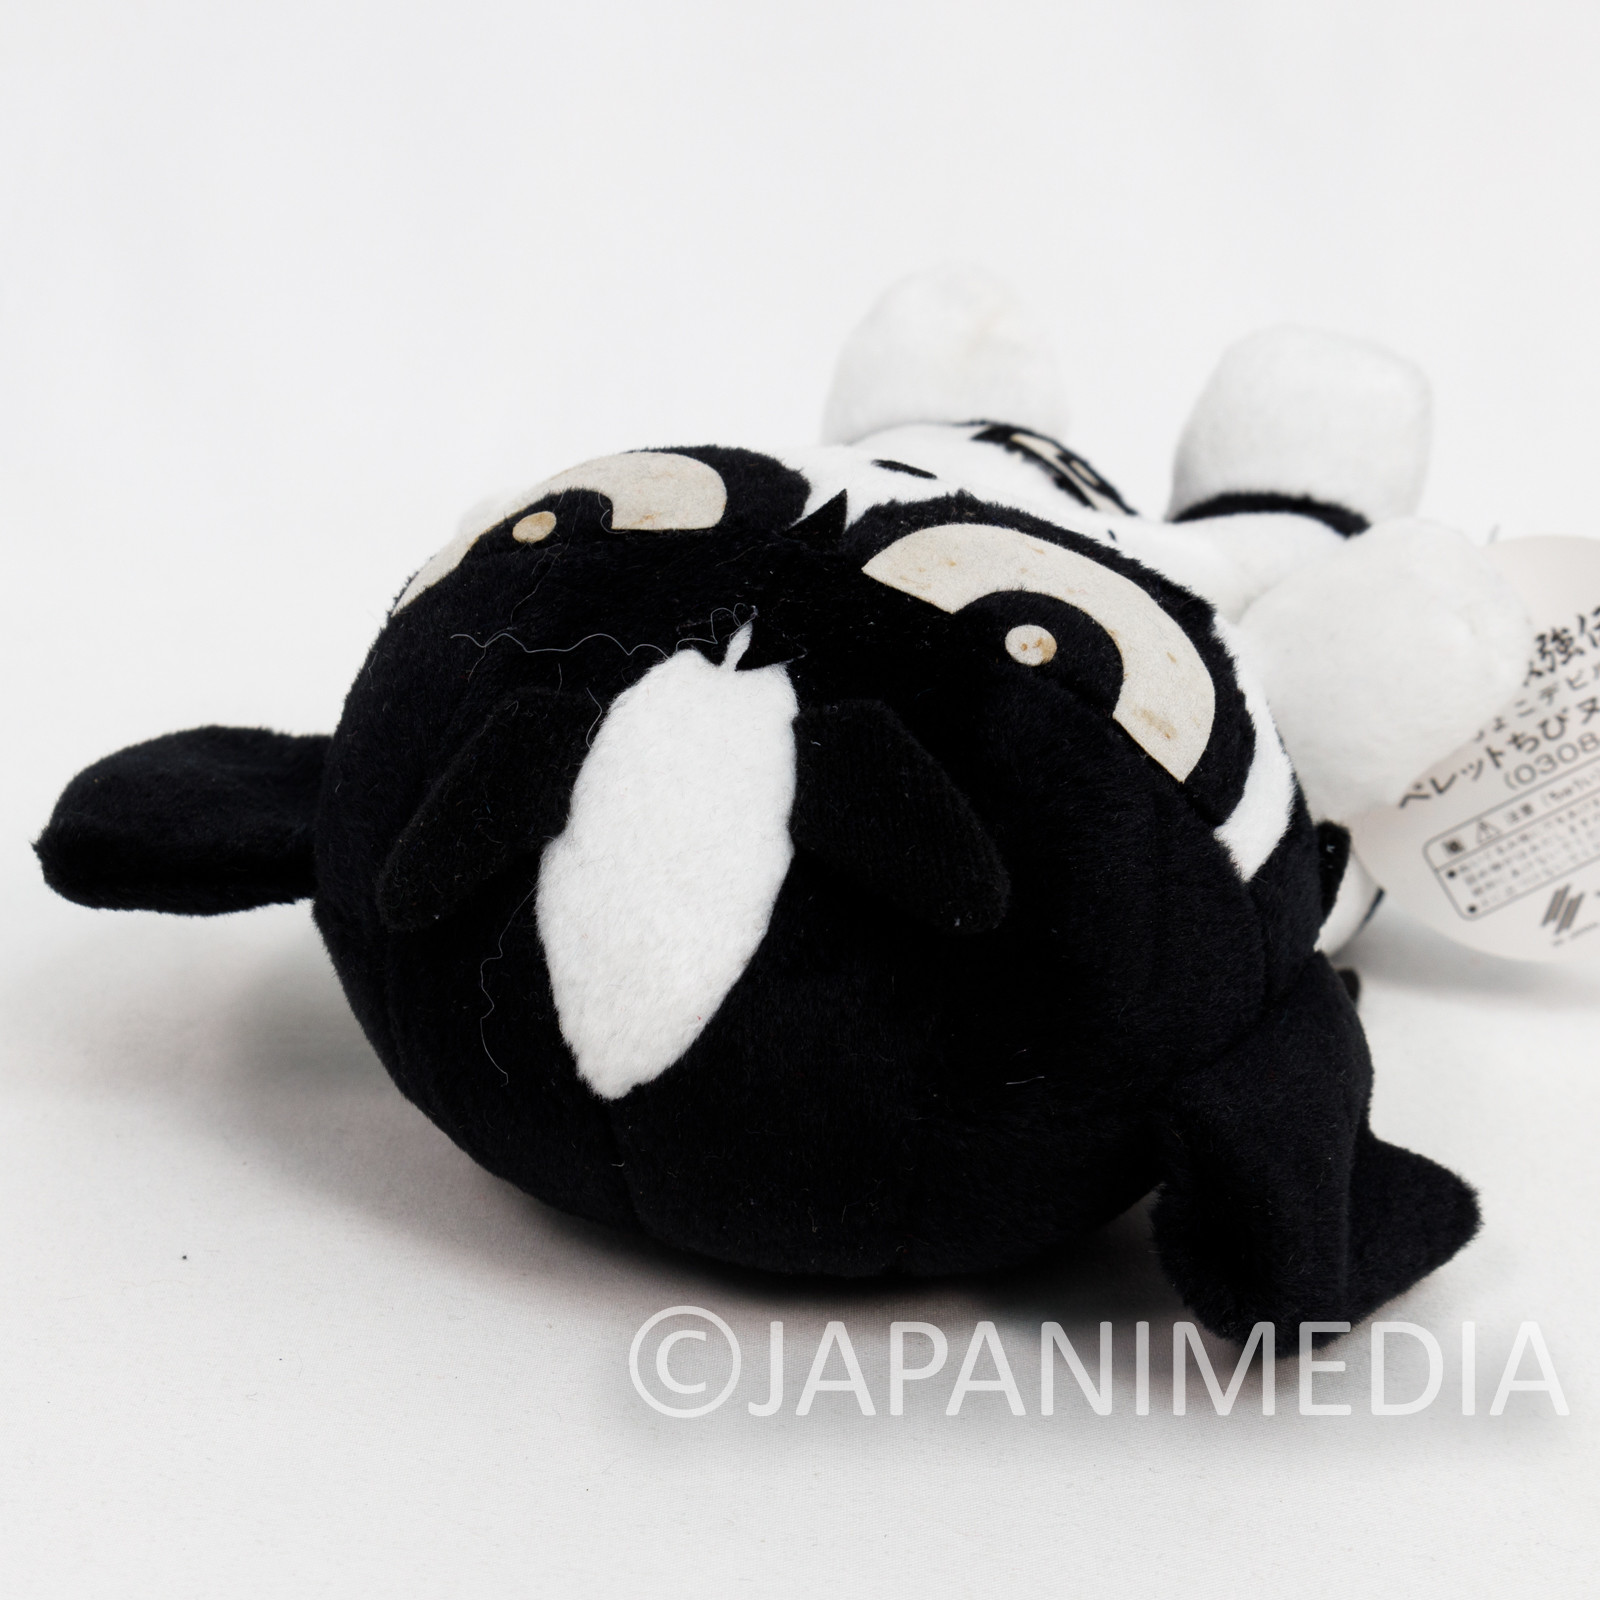 Devilman Pellet Filled Plush Doll 6" White SK Japan JAPAN ANIME